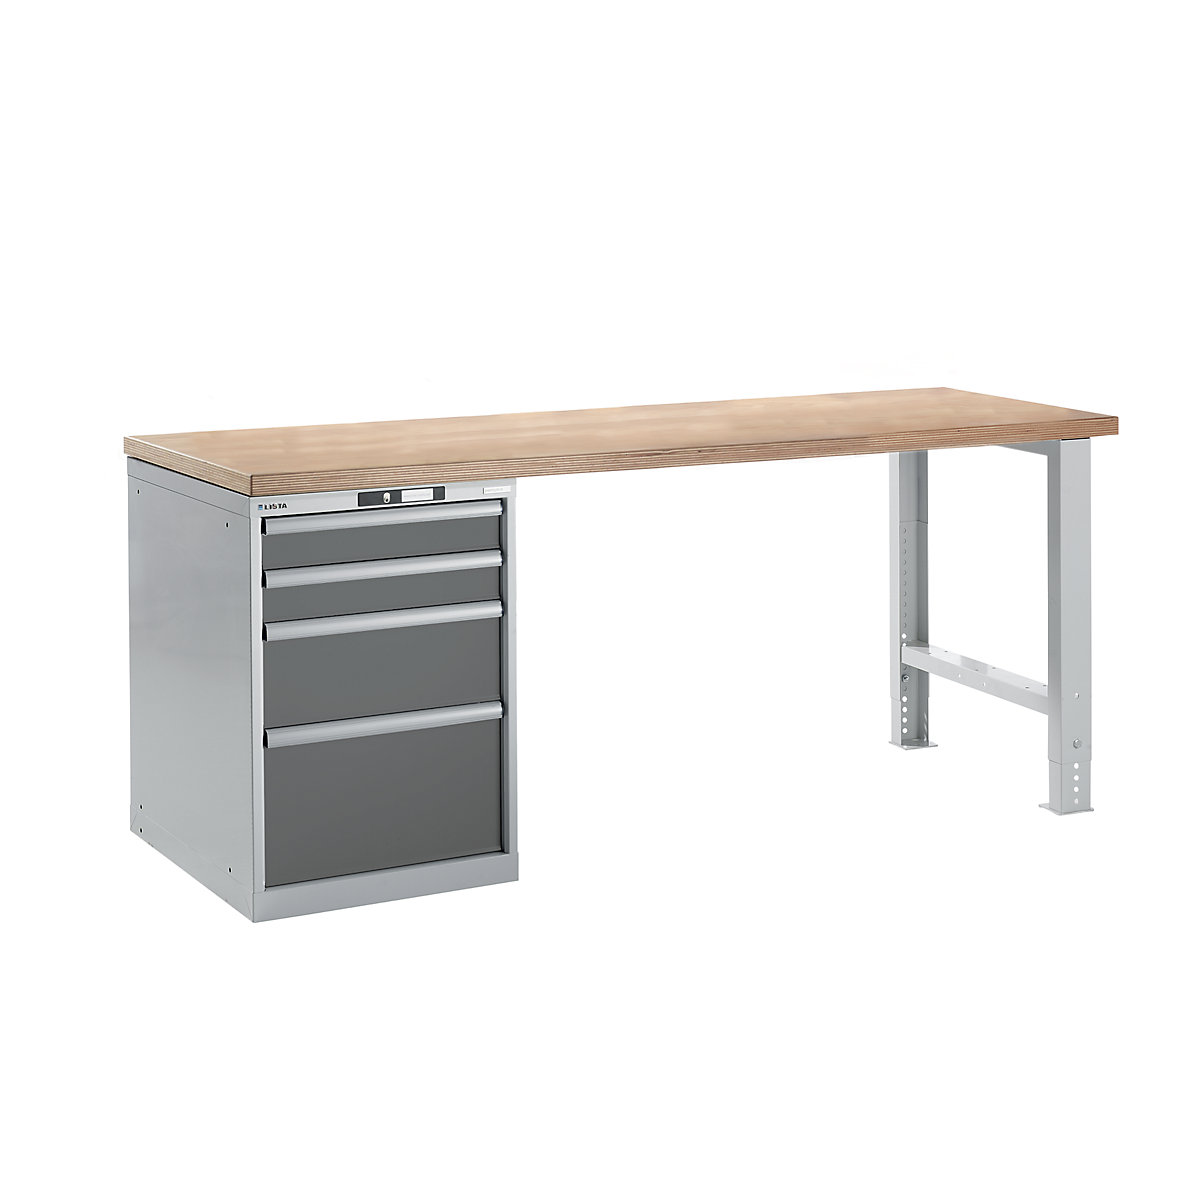 Dílenský stůl ve stavebnicovém systému – LISTA, výška 840 mm, podstavná skříňka, 4 zásuvky, šedá metalíza, šířka stolu 2000 mm-15